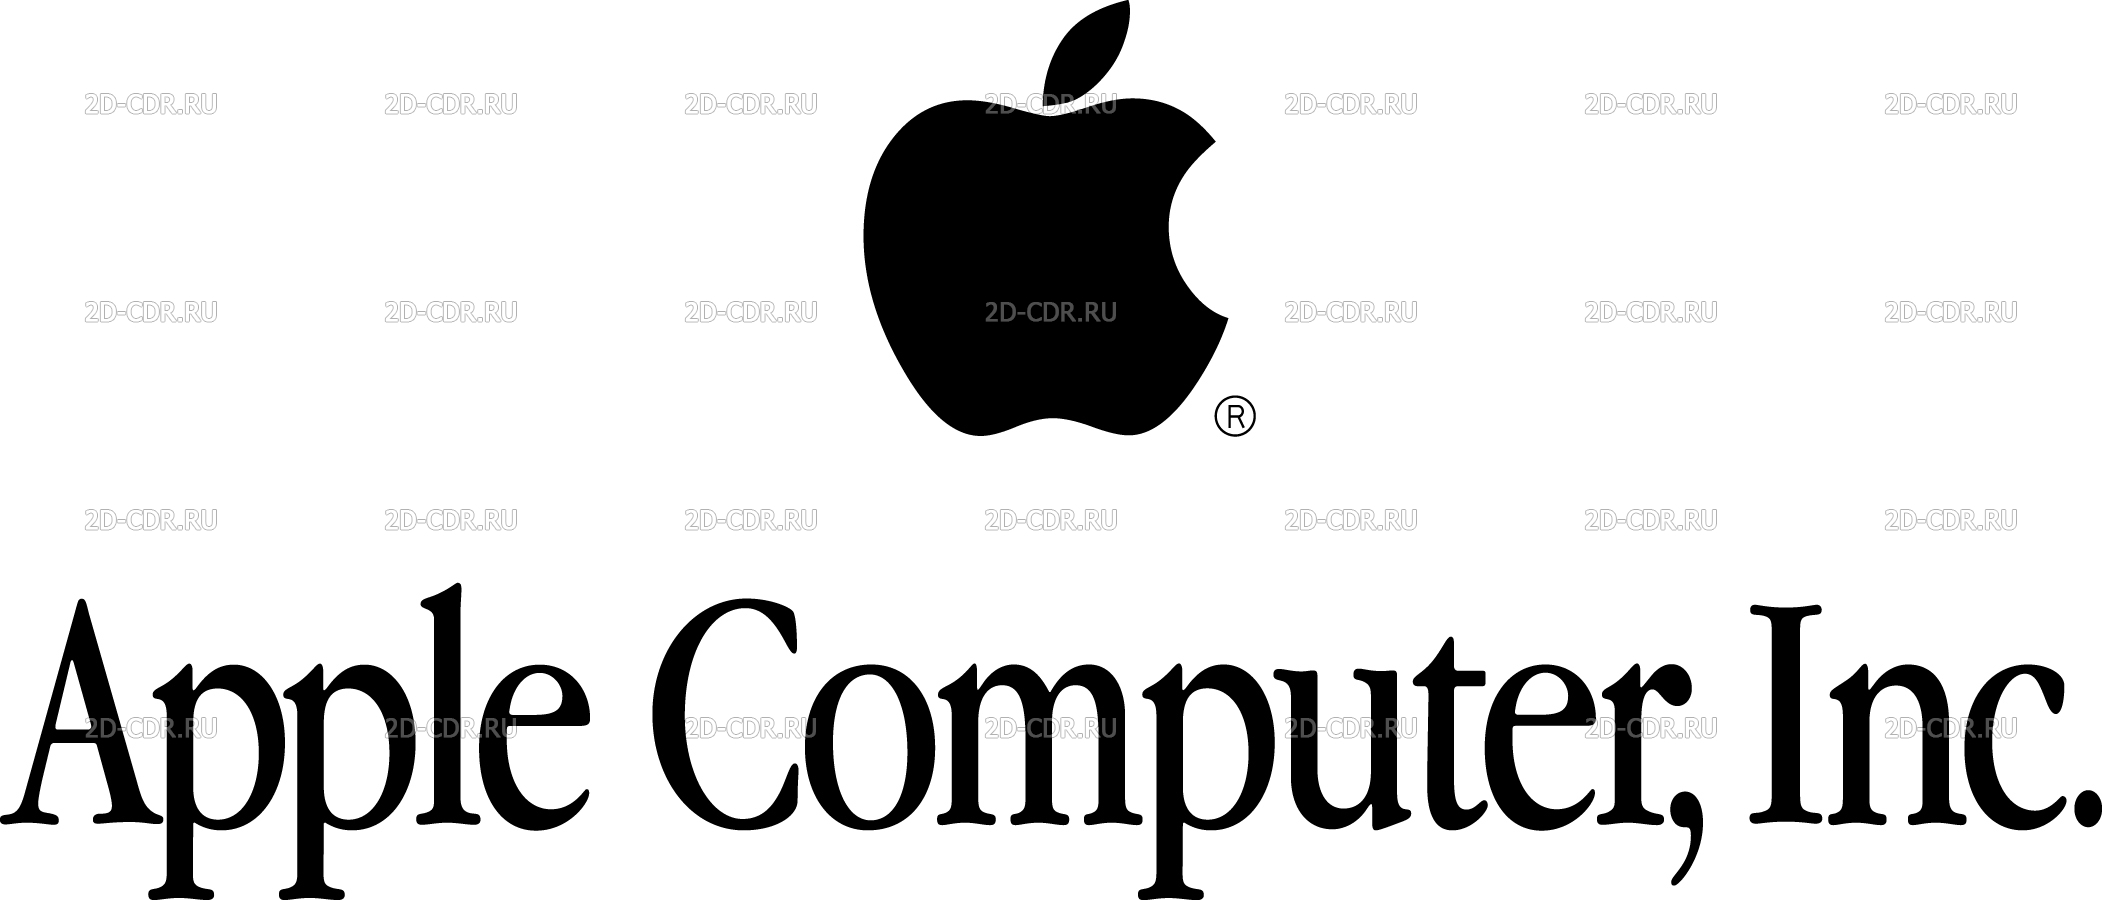 Компания Apple эмблема